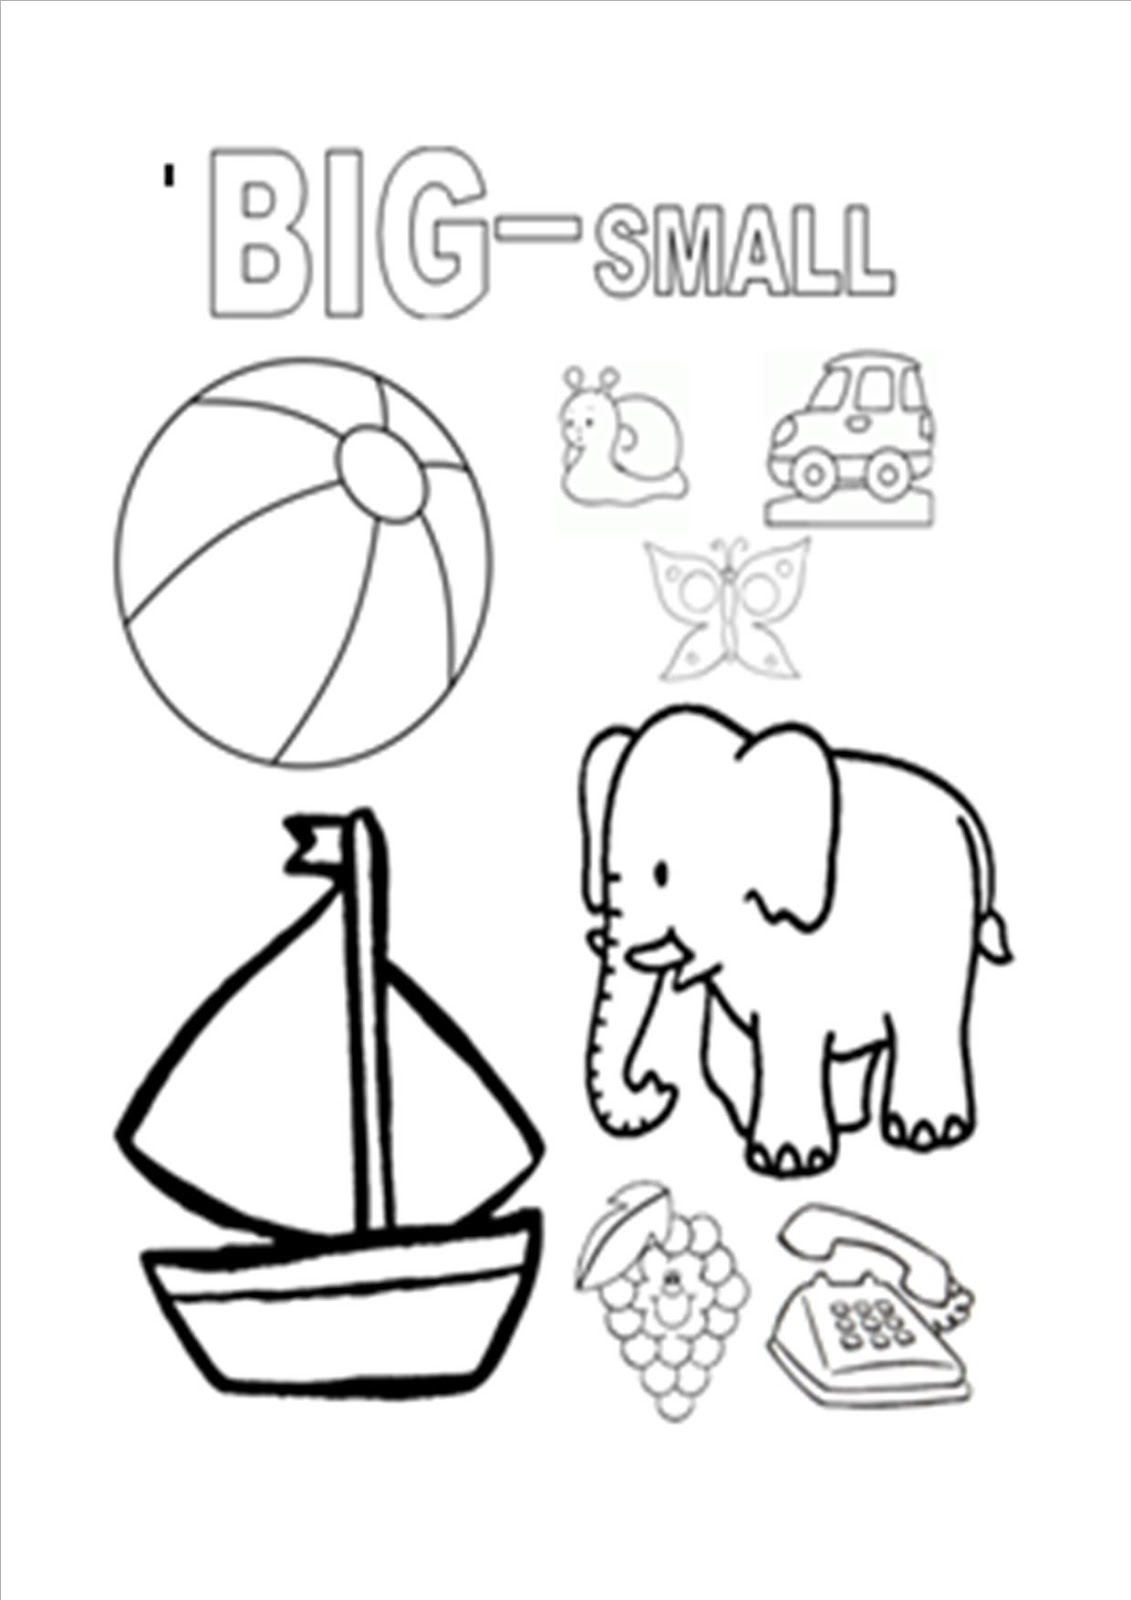 Small big com. Small раскраска. Big or small раскраска. Big small для детей. Big small раскраска для детей.